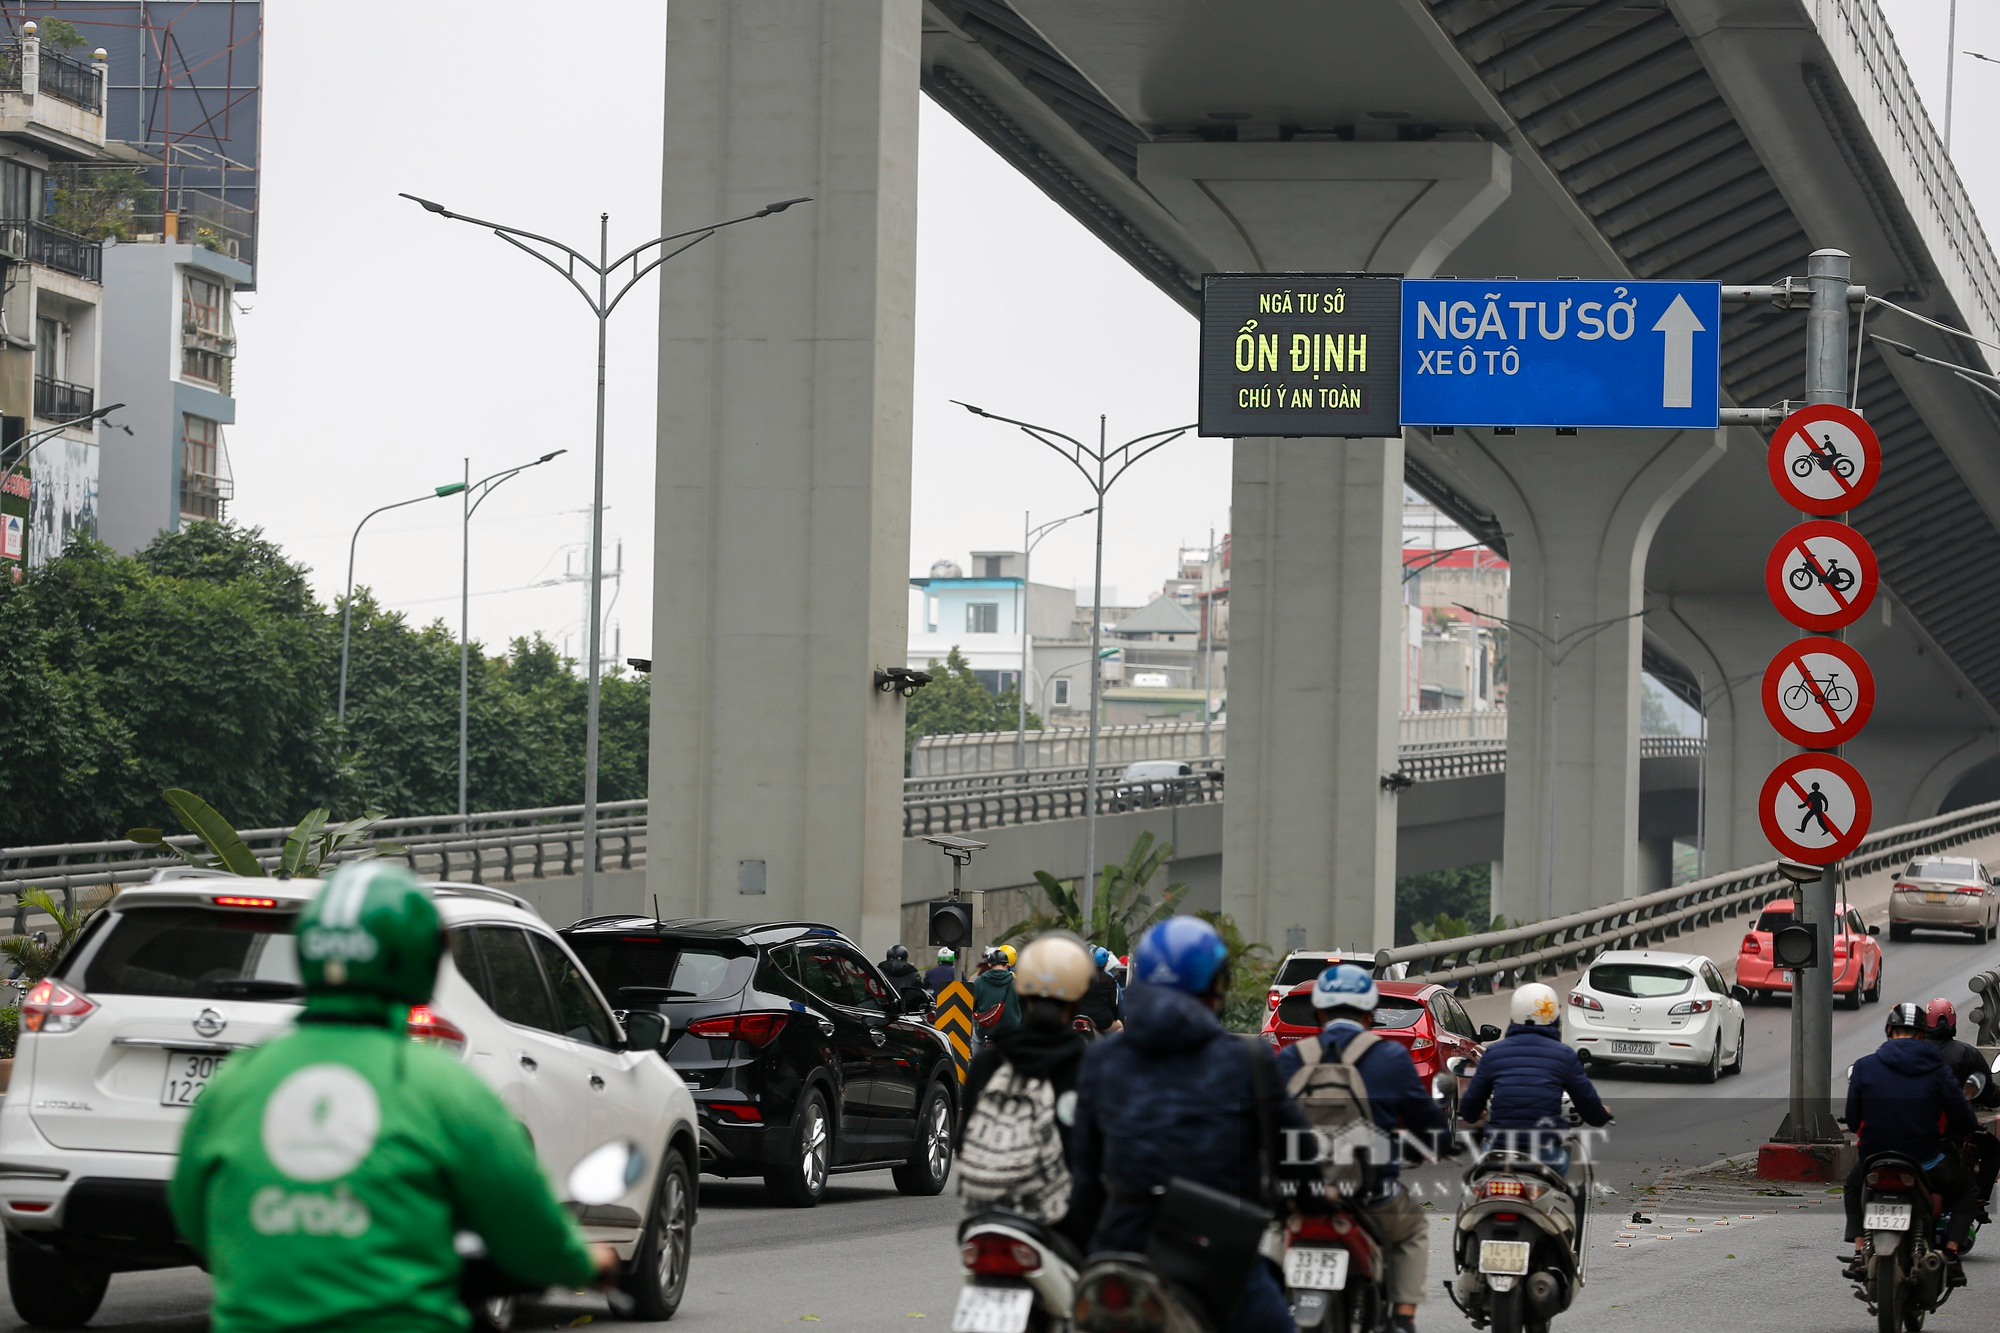 Mục sở thị biển báo giao thông điện tử Hà Nội đang thí điểm nhằm giảm ùn tắc - Ảnh 5.